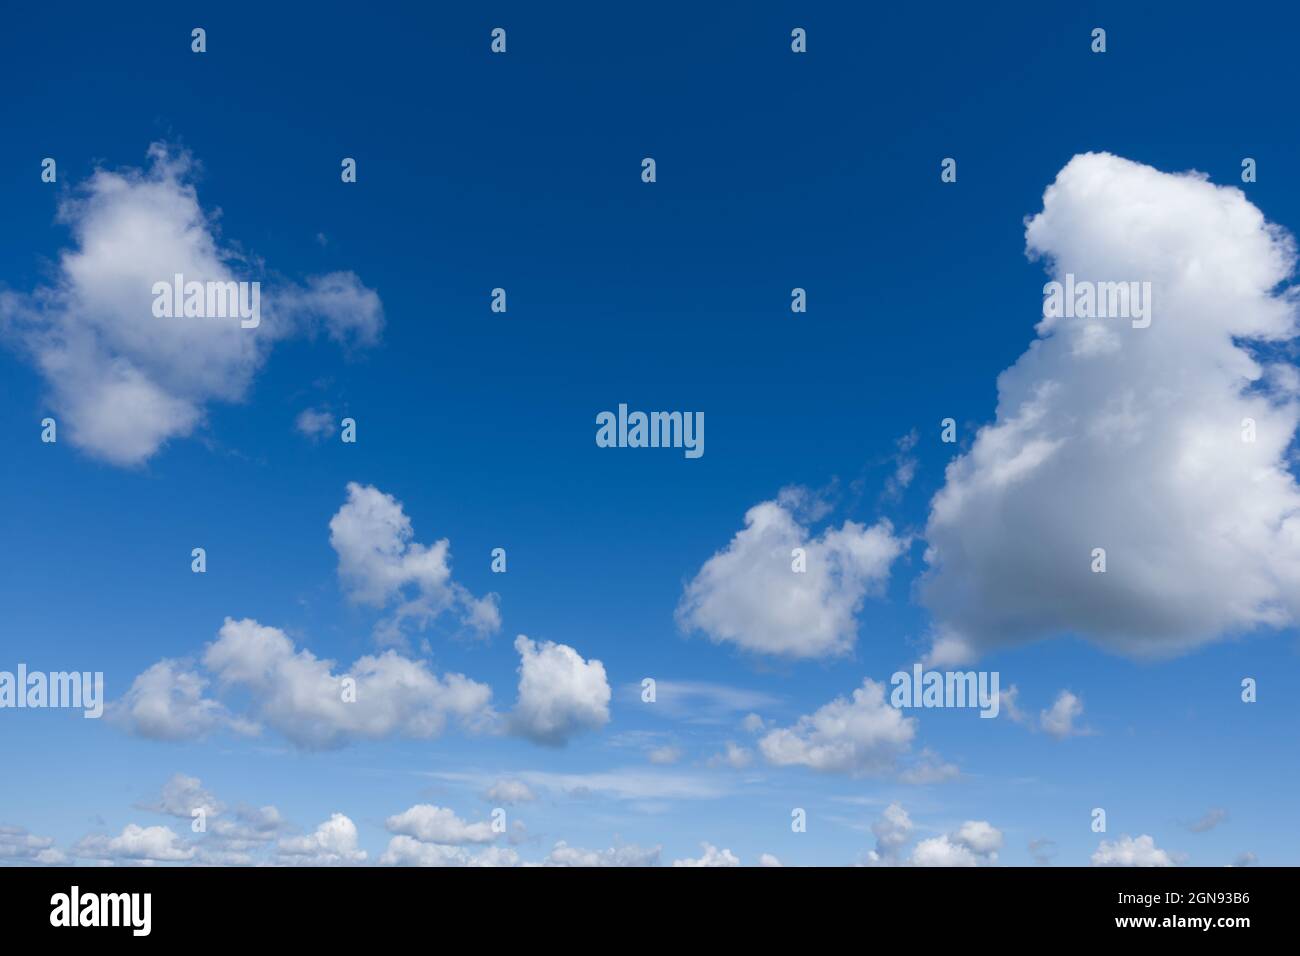 Photo du ciel bleu clair avec des nuages blancs. Beau ciel bleu et nuages blancs, pas d'oiseaux, pas de bruit. Banque D'Images